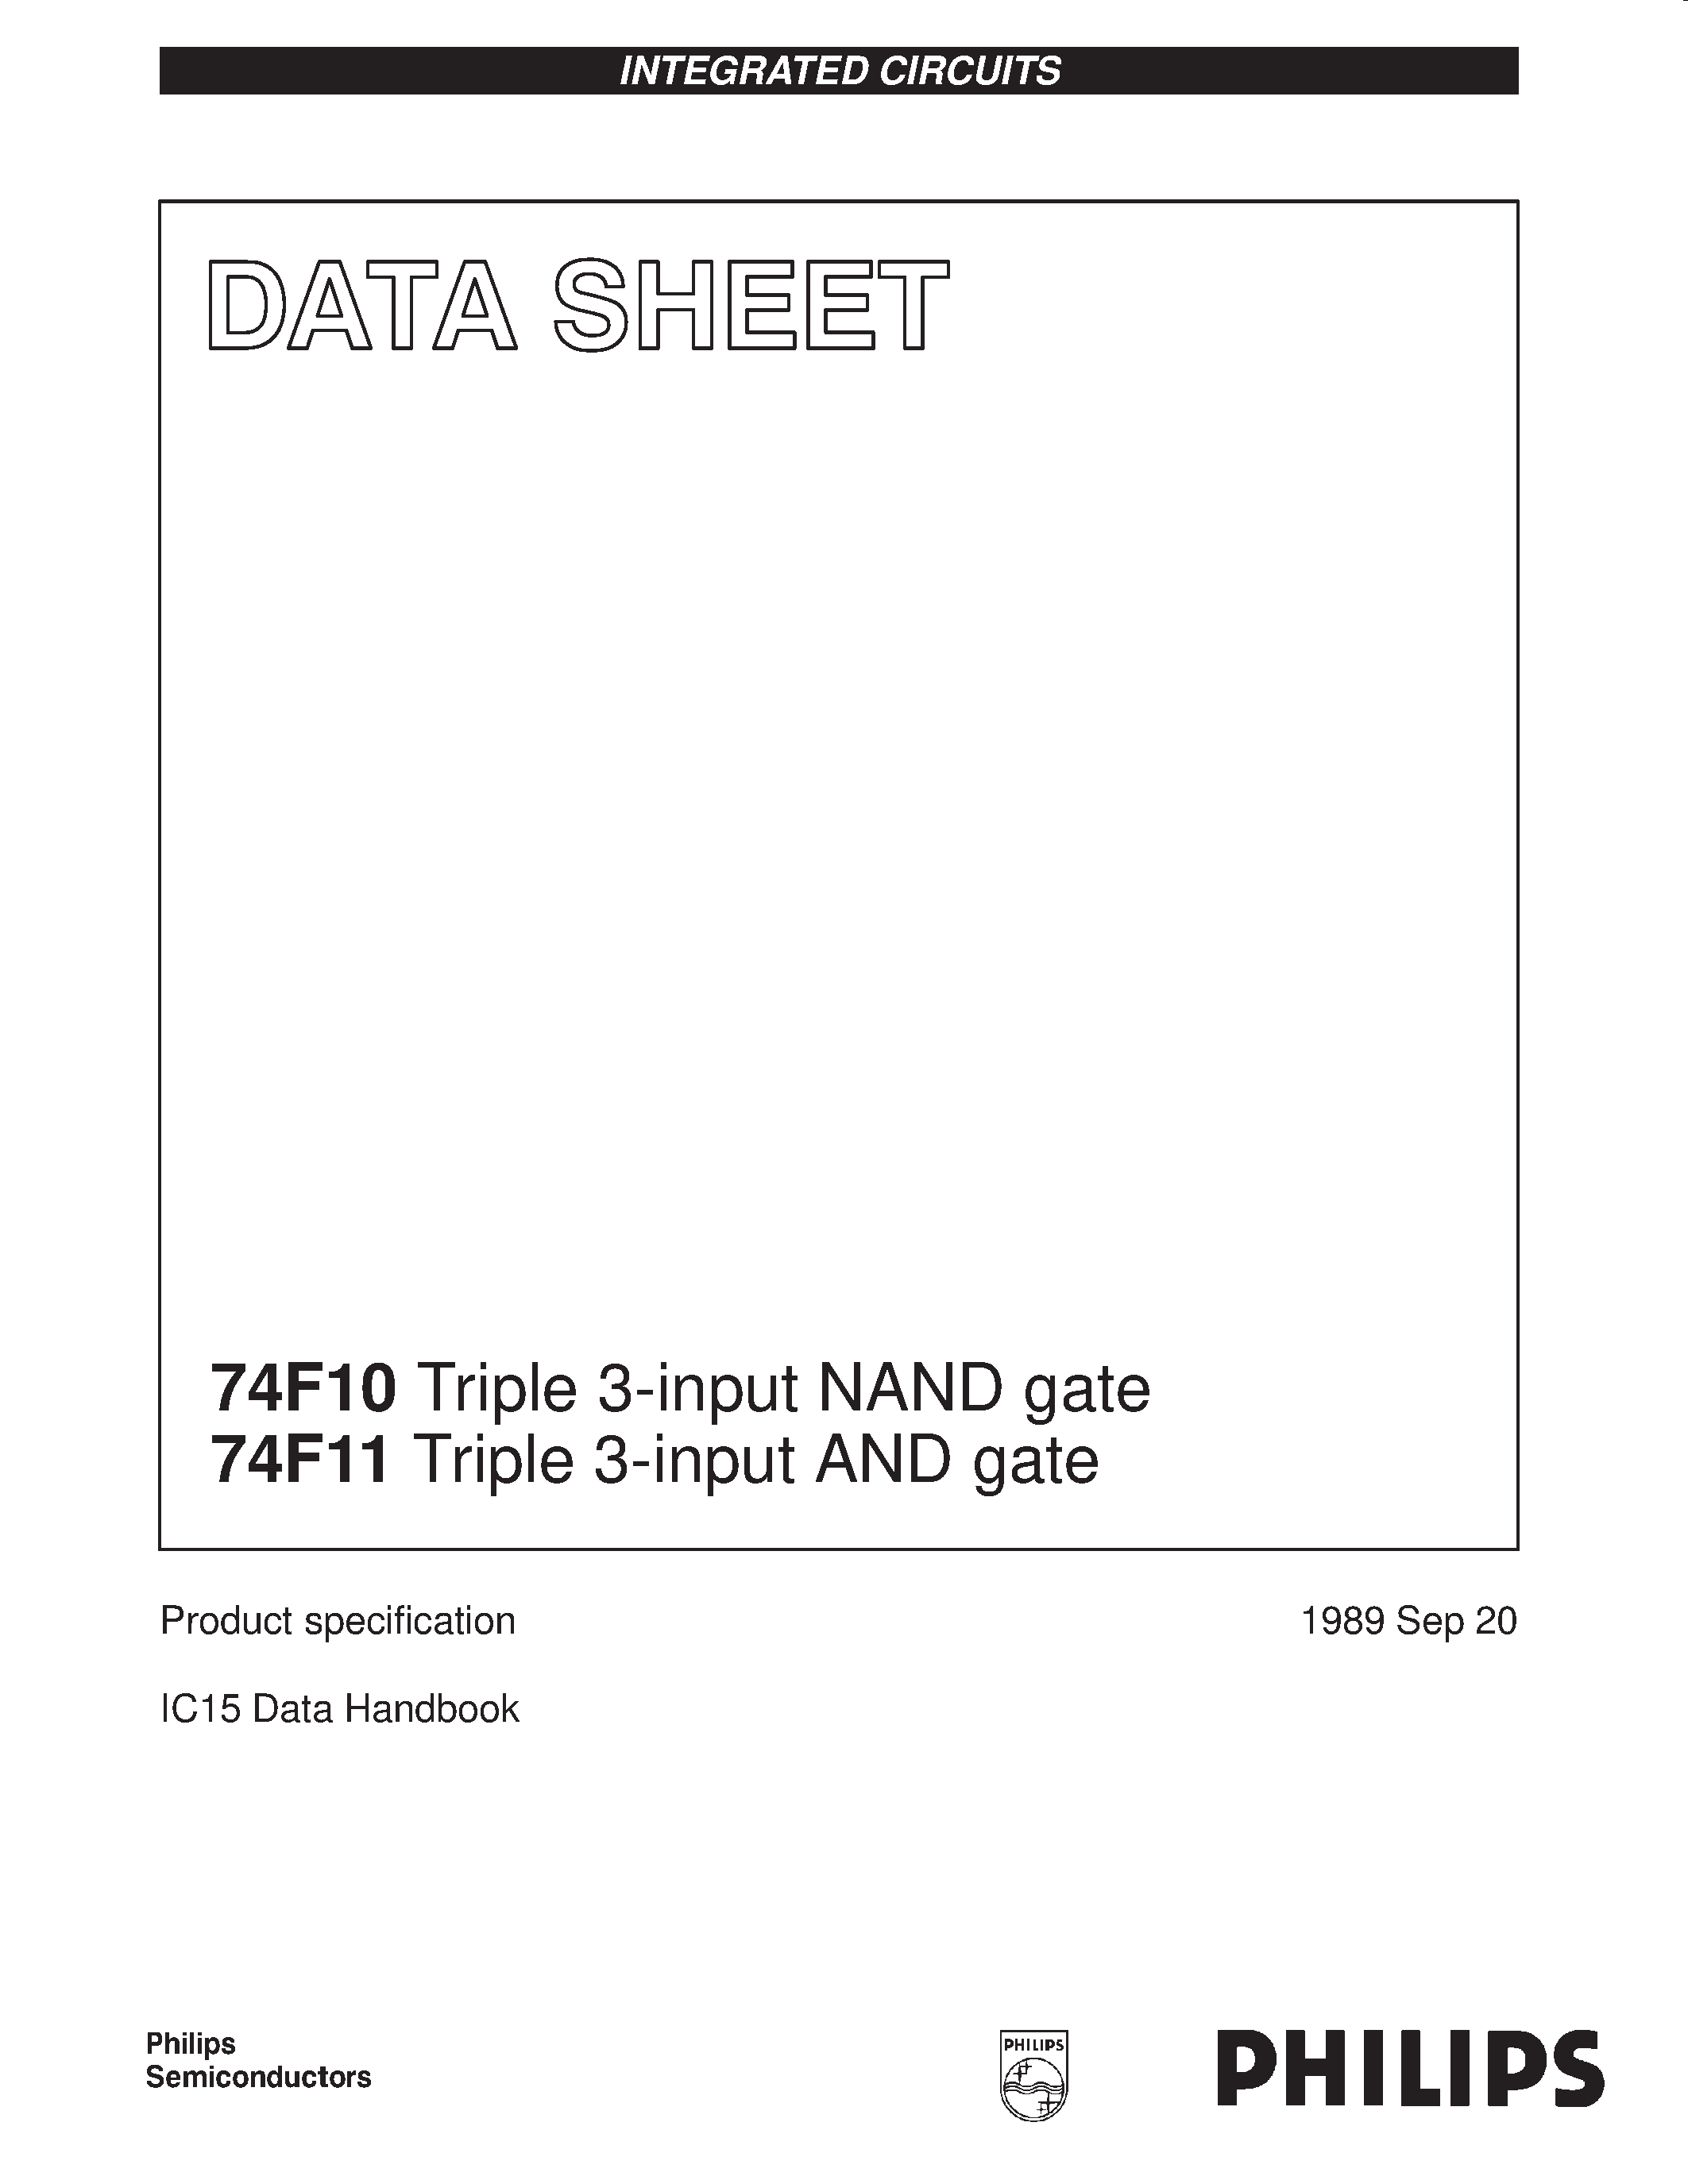 Даташит 74F11 - Triple 3-input NAND gate страница 1